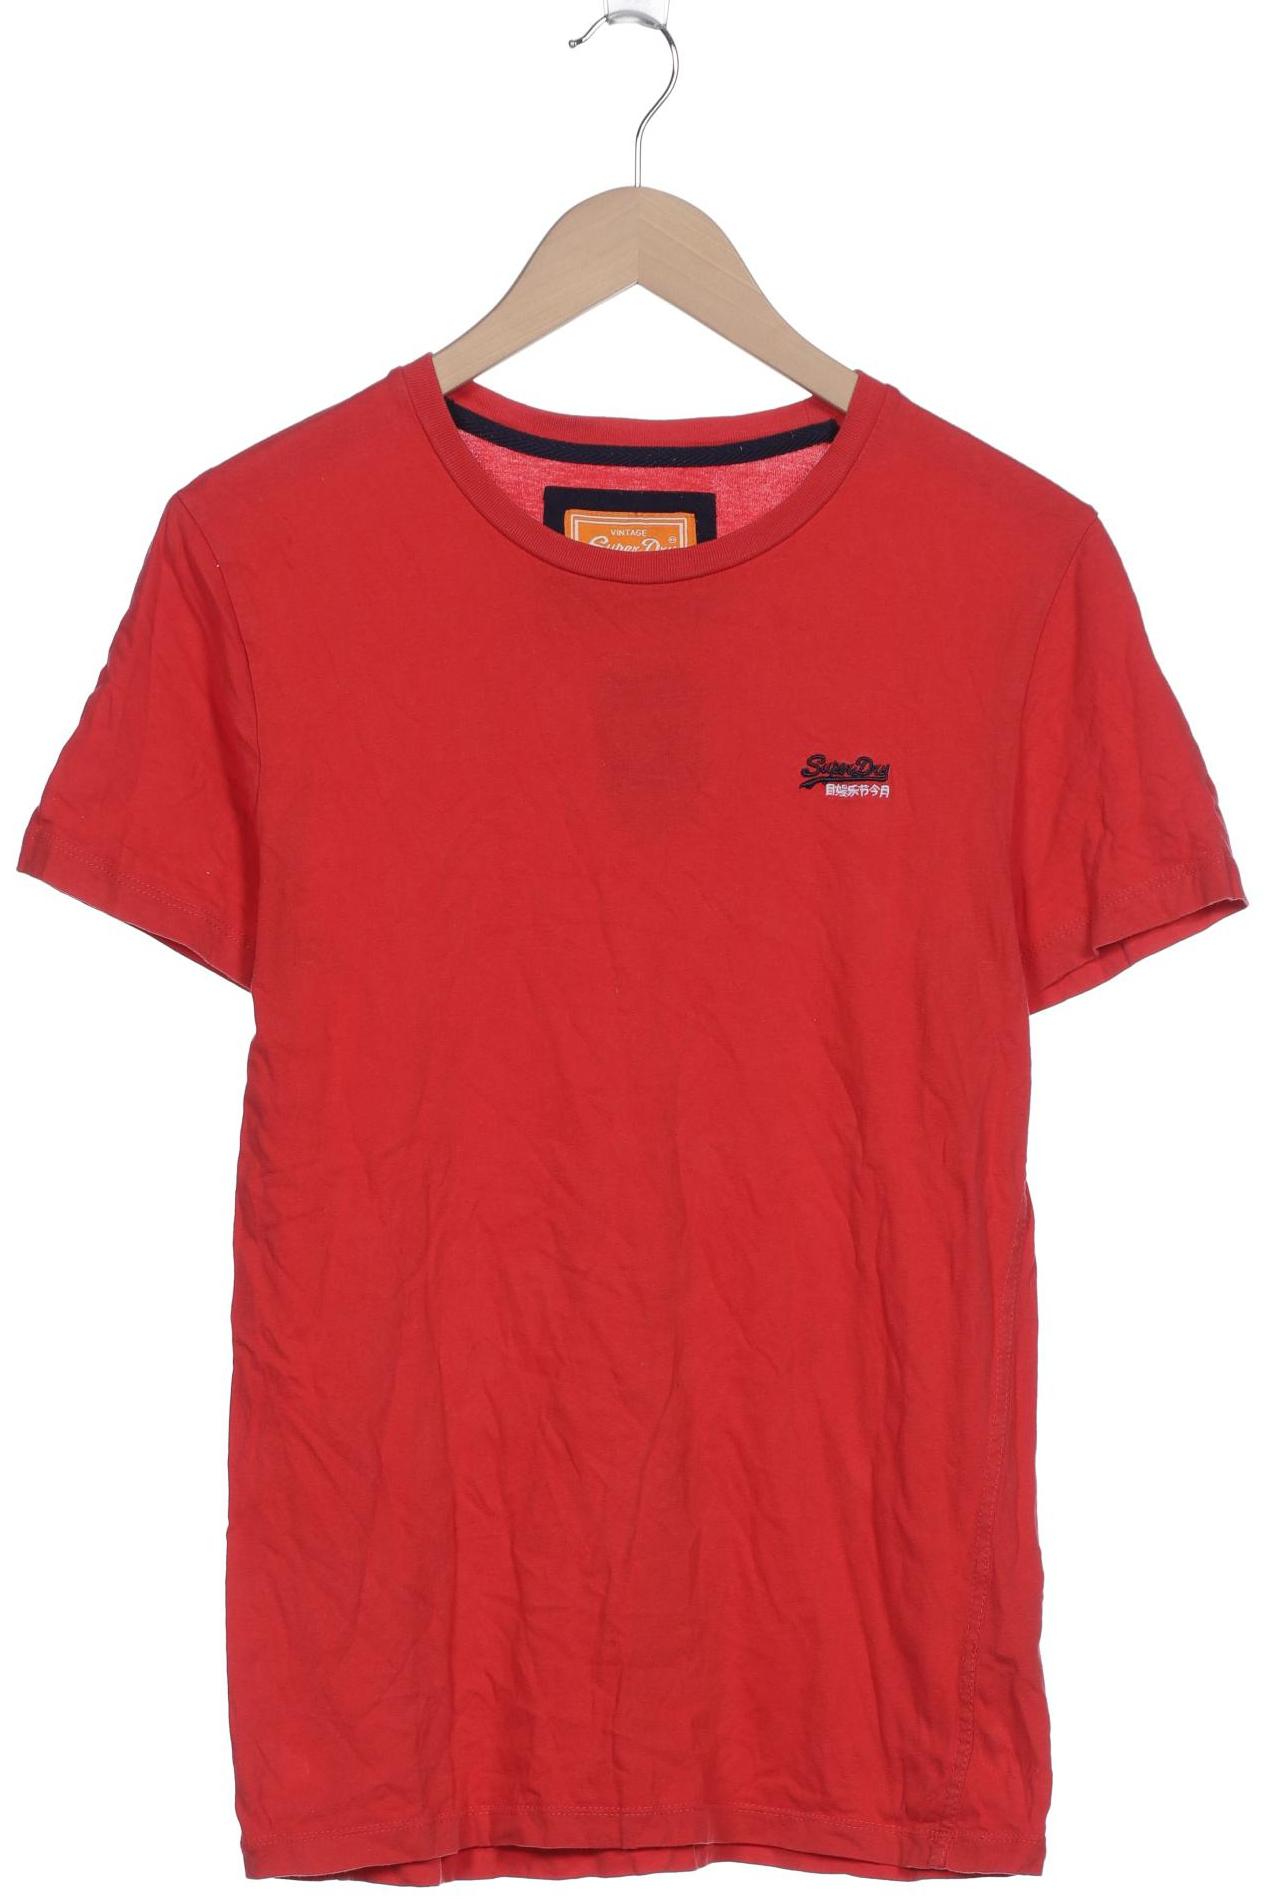 Superdry Damen T-Shirt, rot, Gr. 42 von Superdry